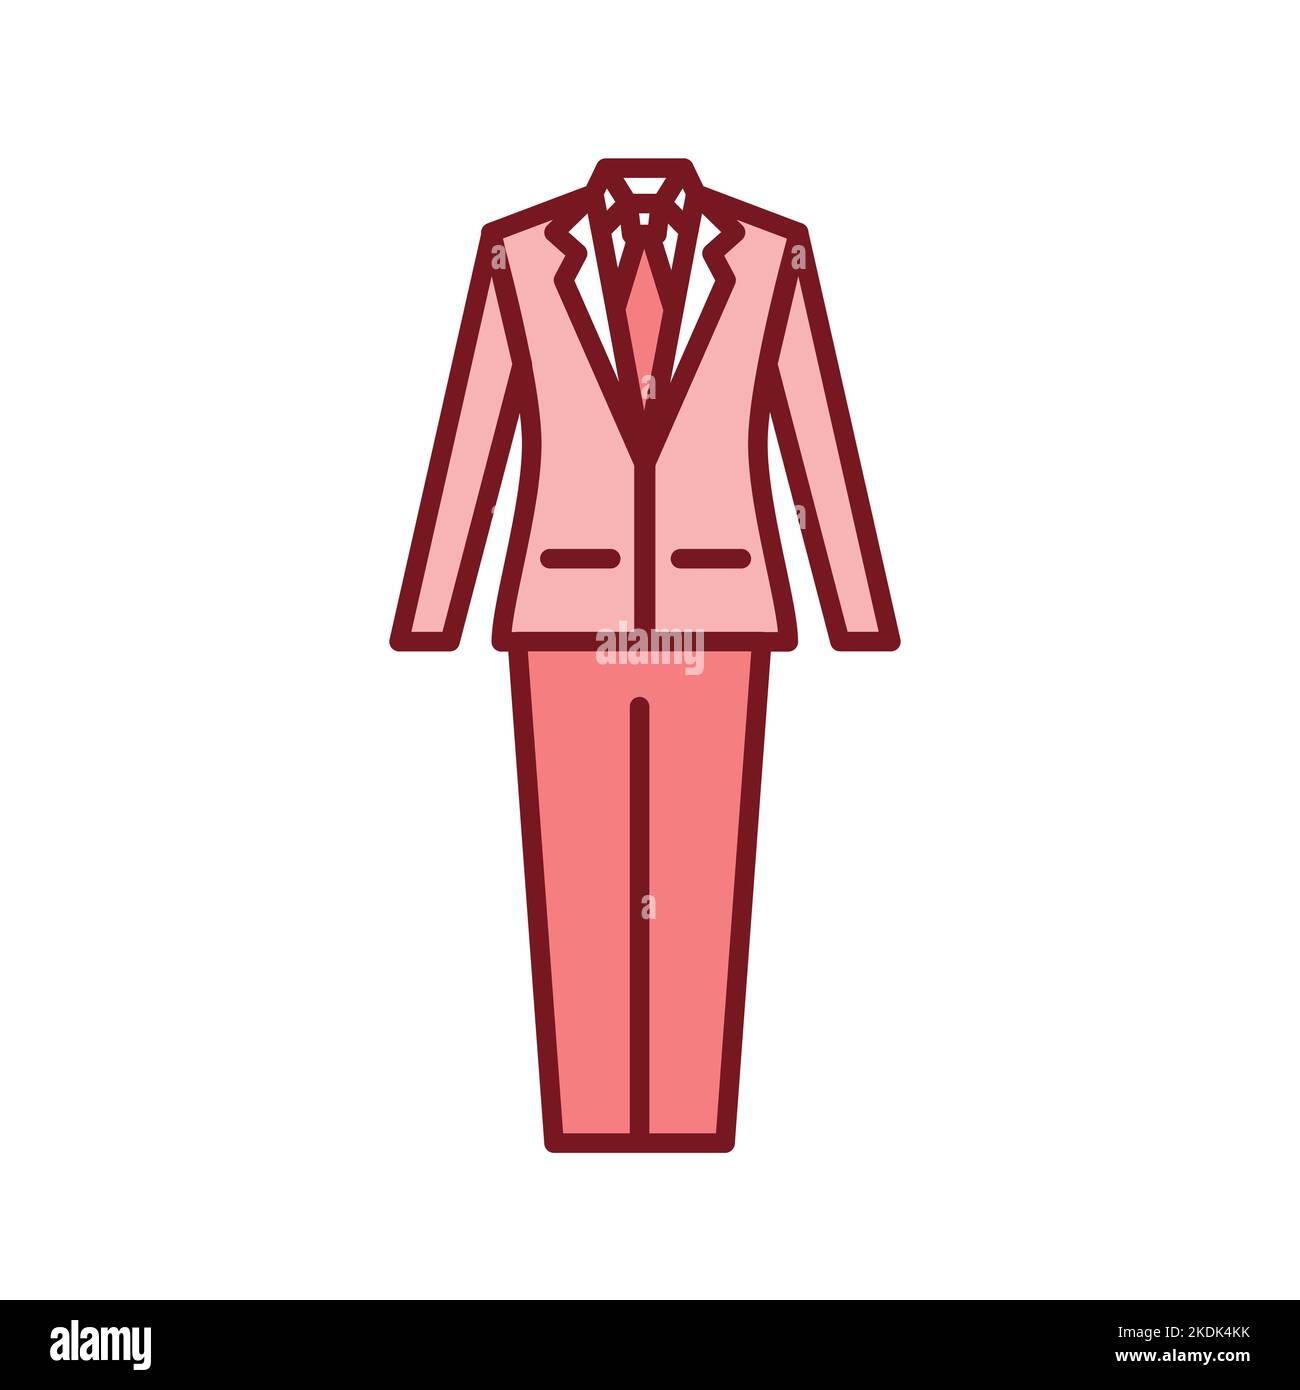 Men's suits transparent background PNG clipart | HiClipart